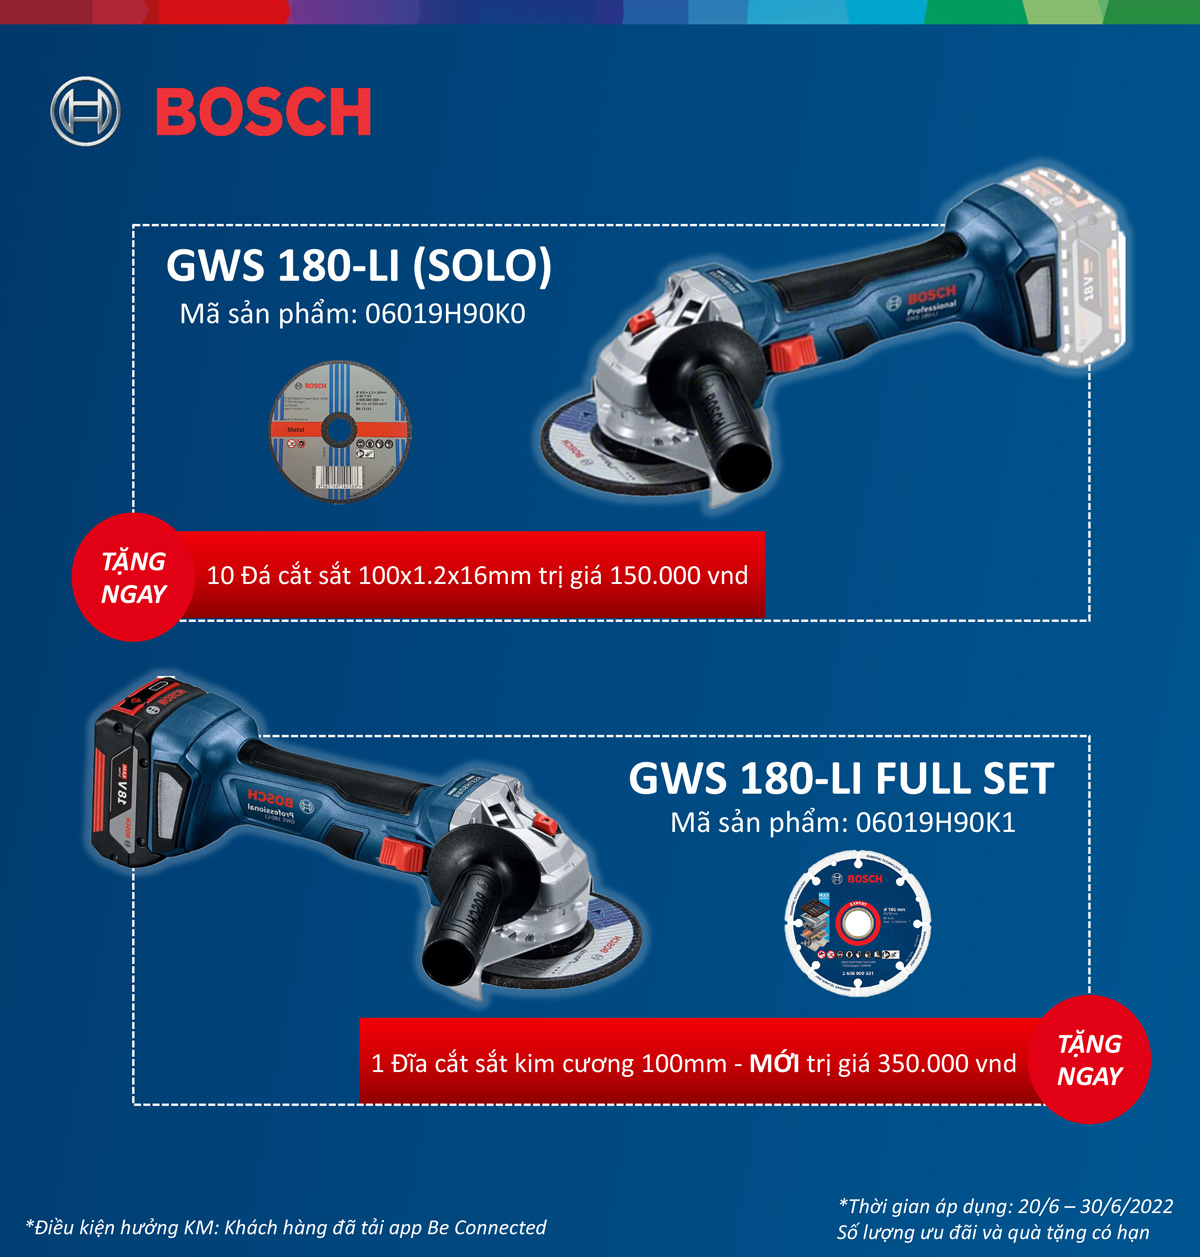 Ưu đãi tặng đĩa cắt khi mua máy mài góc Bosch GWS 180